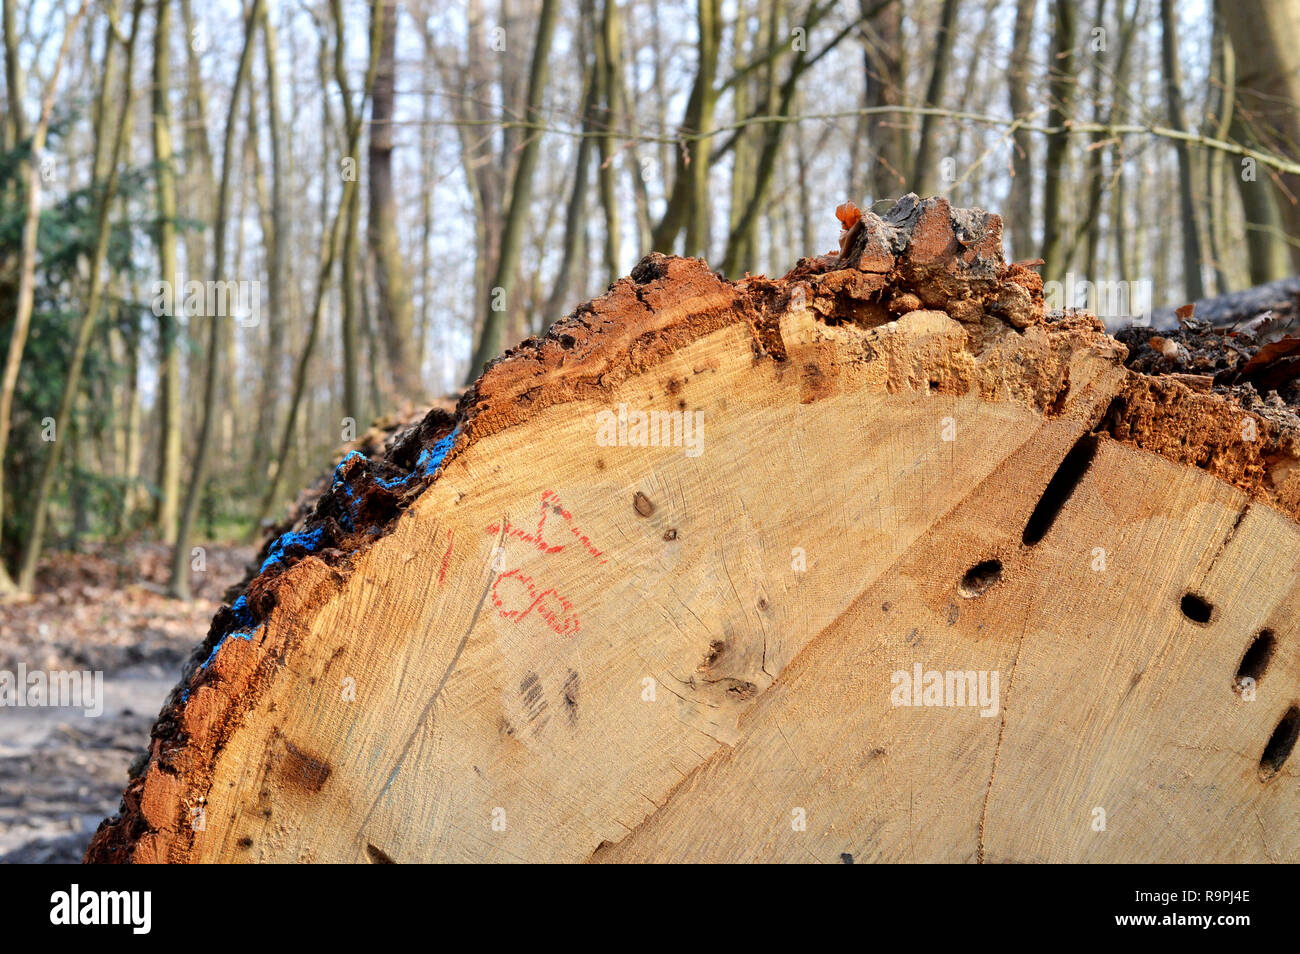 Die Entwaldung in einem Wald Holz zu bekommen. Ökologische Katastrophe Stockfoto